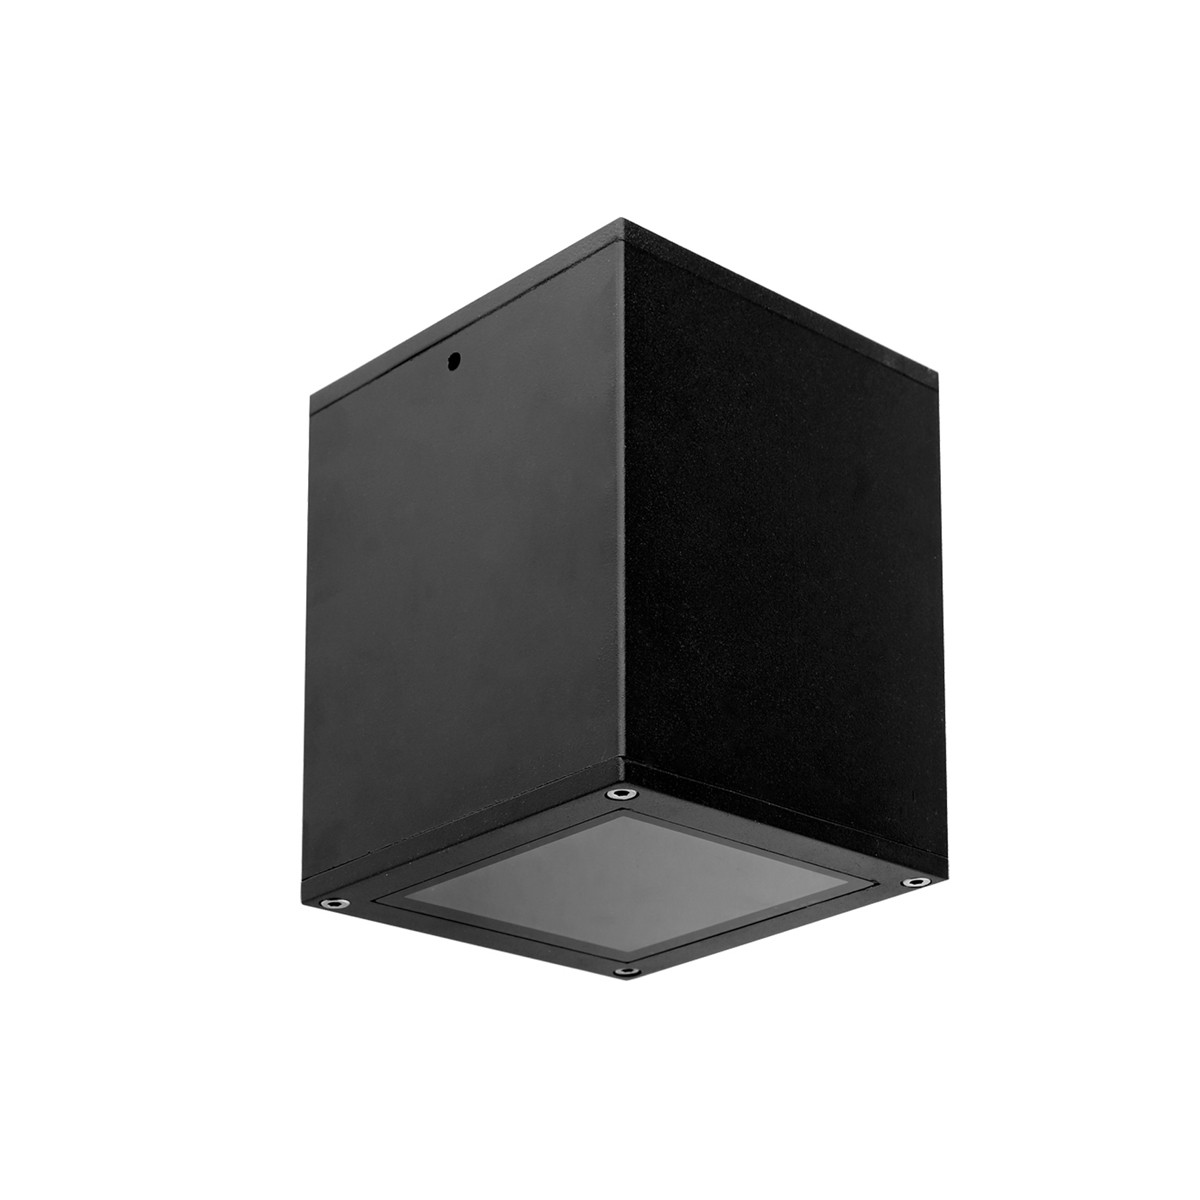 Φωτιστικό Αλουμινίου Οροφής IP54 E27 108x108mm Μαύρο Χρώμα        VK/01066/B